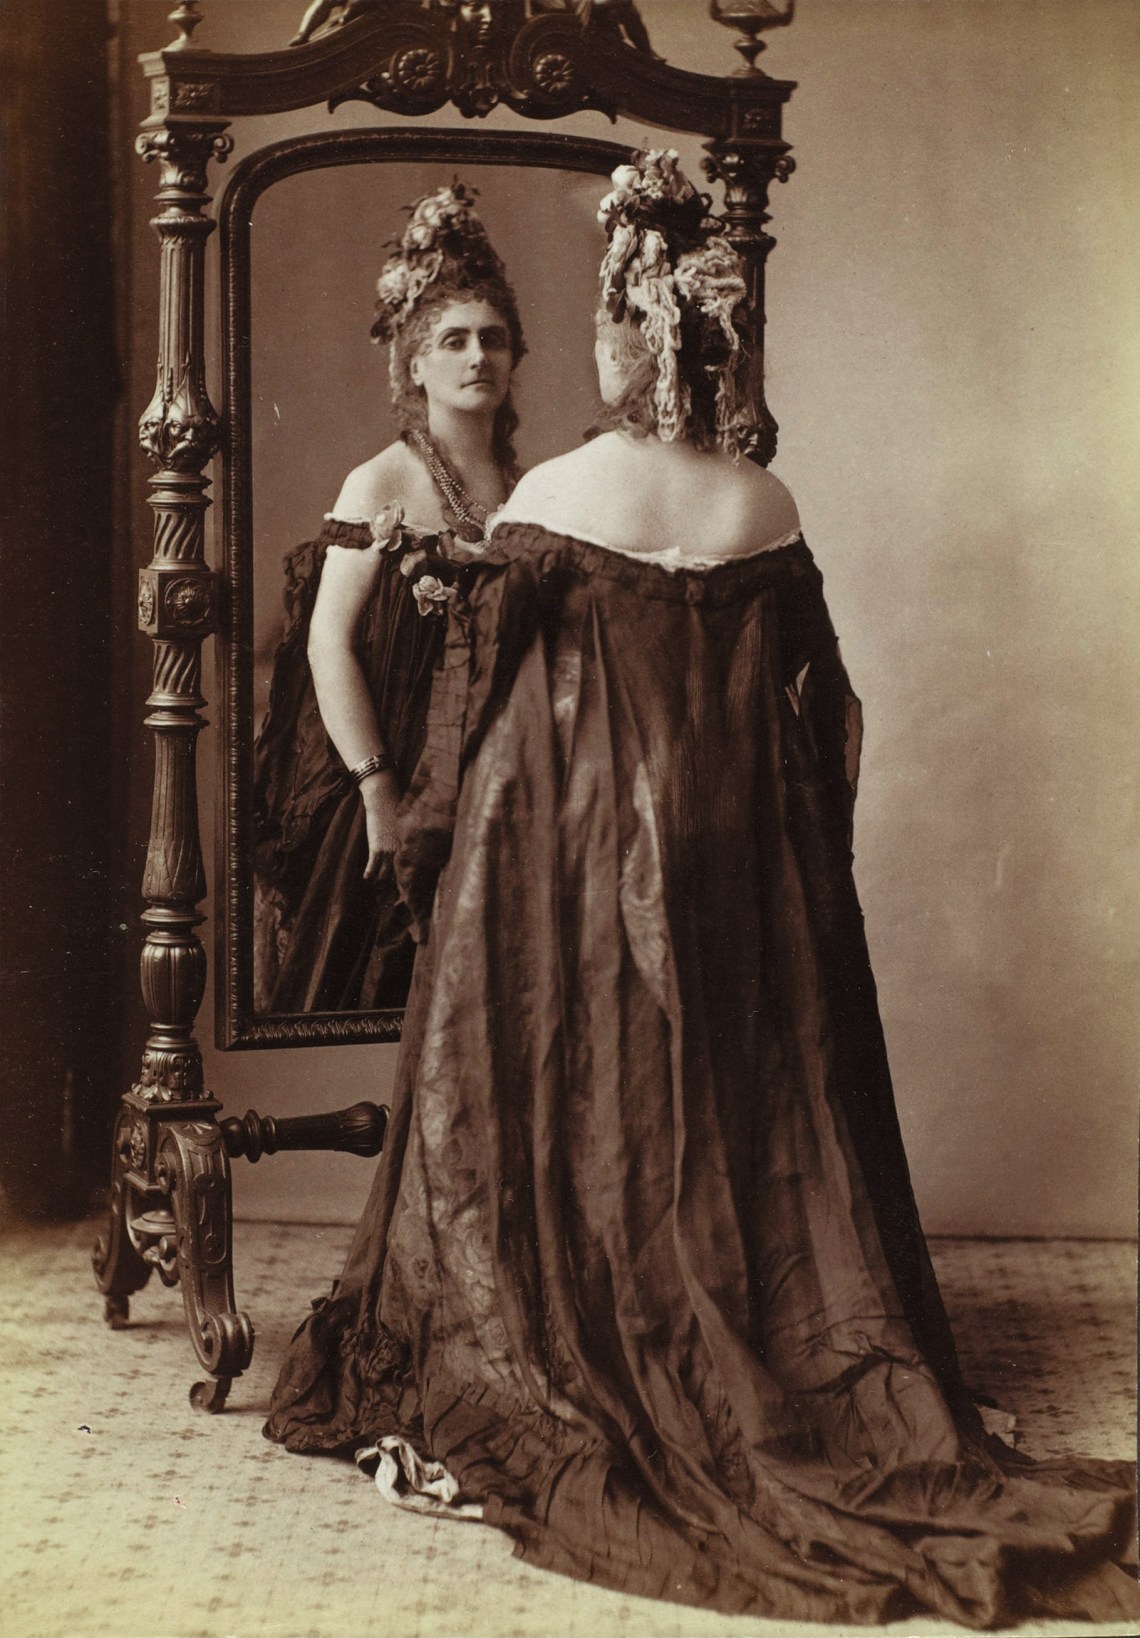 Virginia Oldoïni, Countess of Castiglione; photograph by Pierre-Louis Pierson